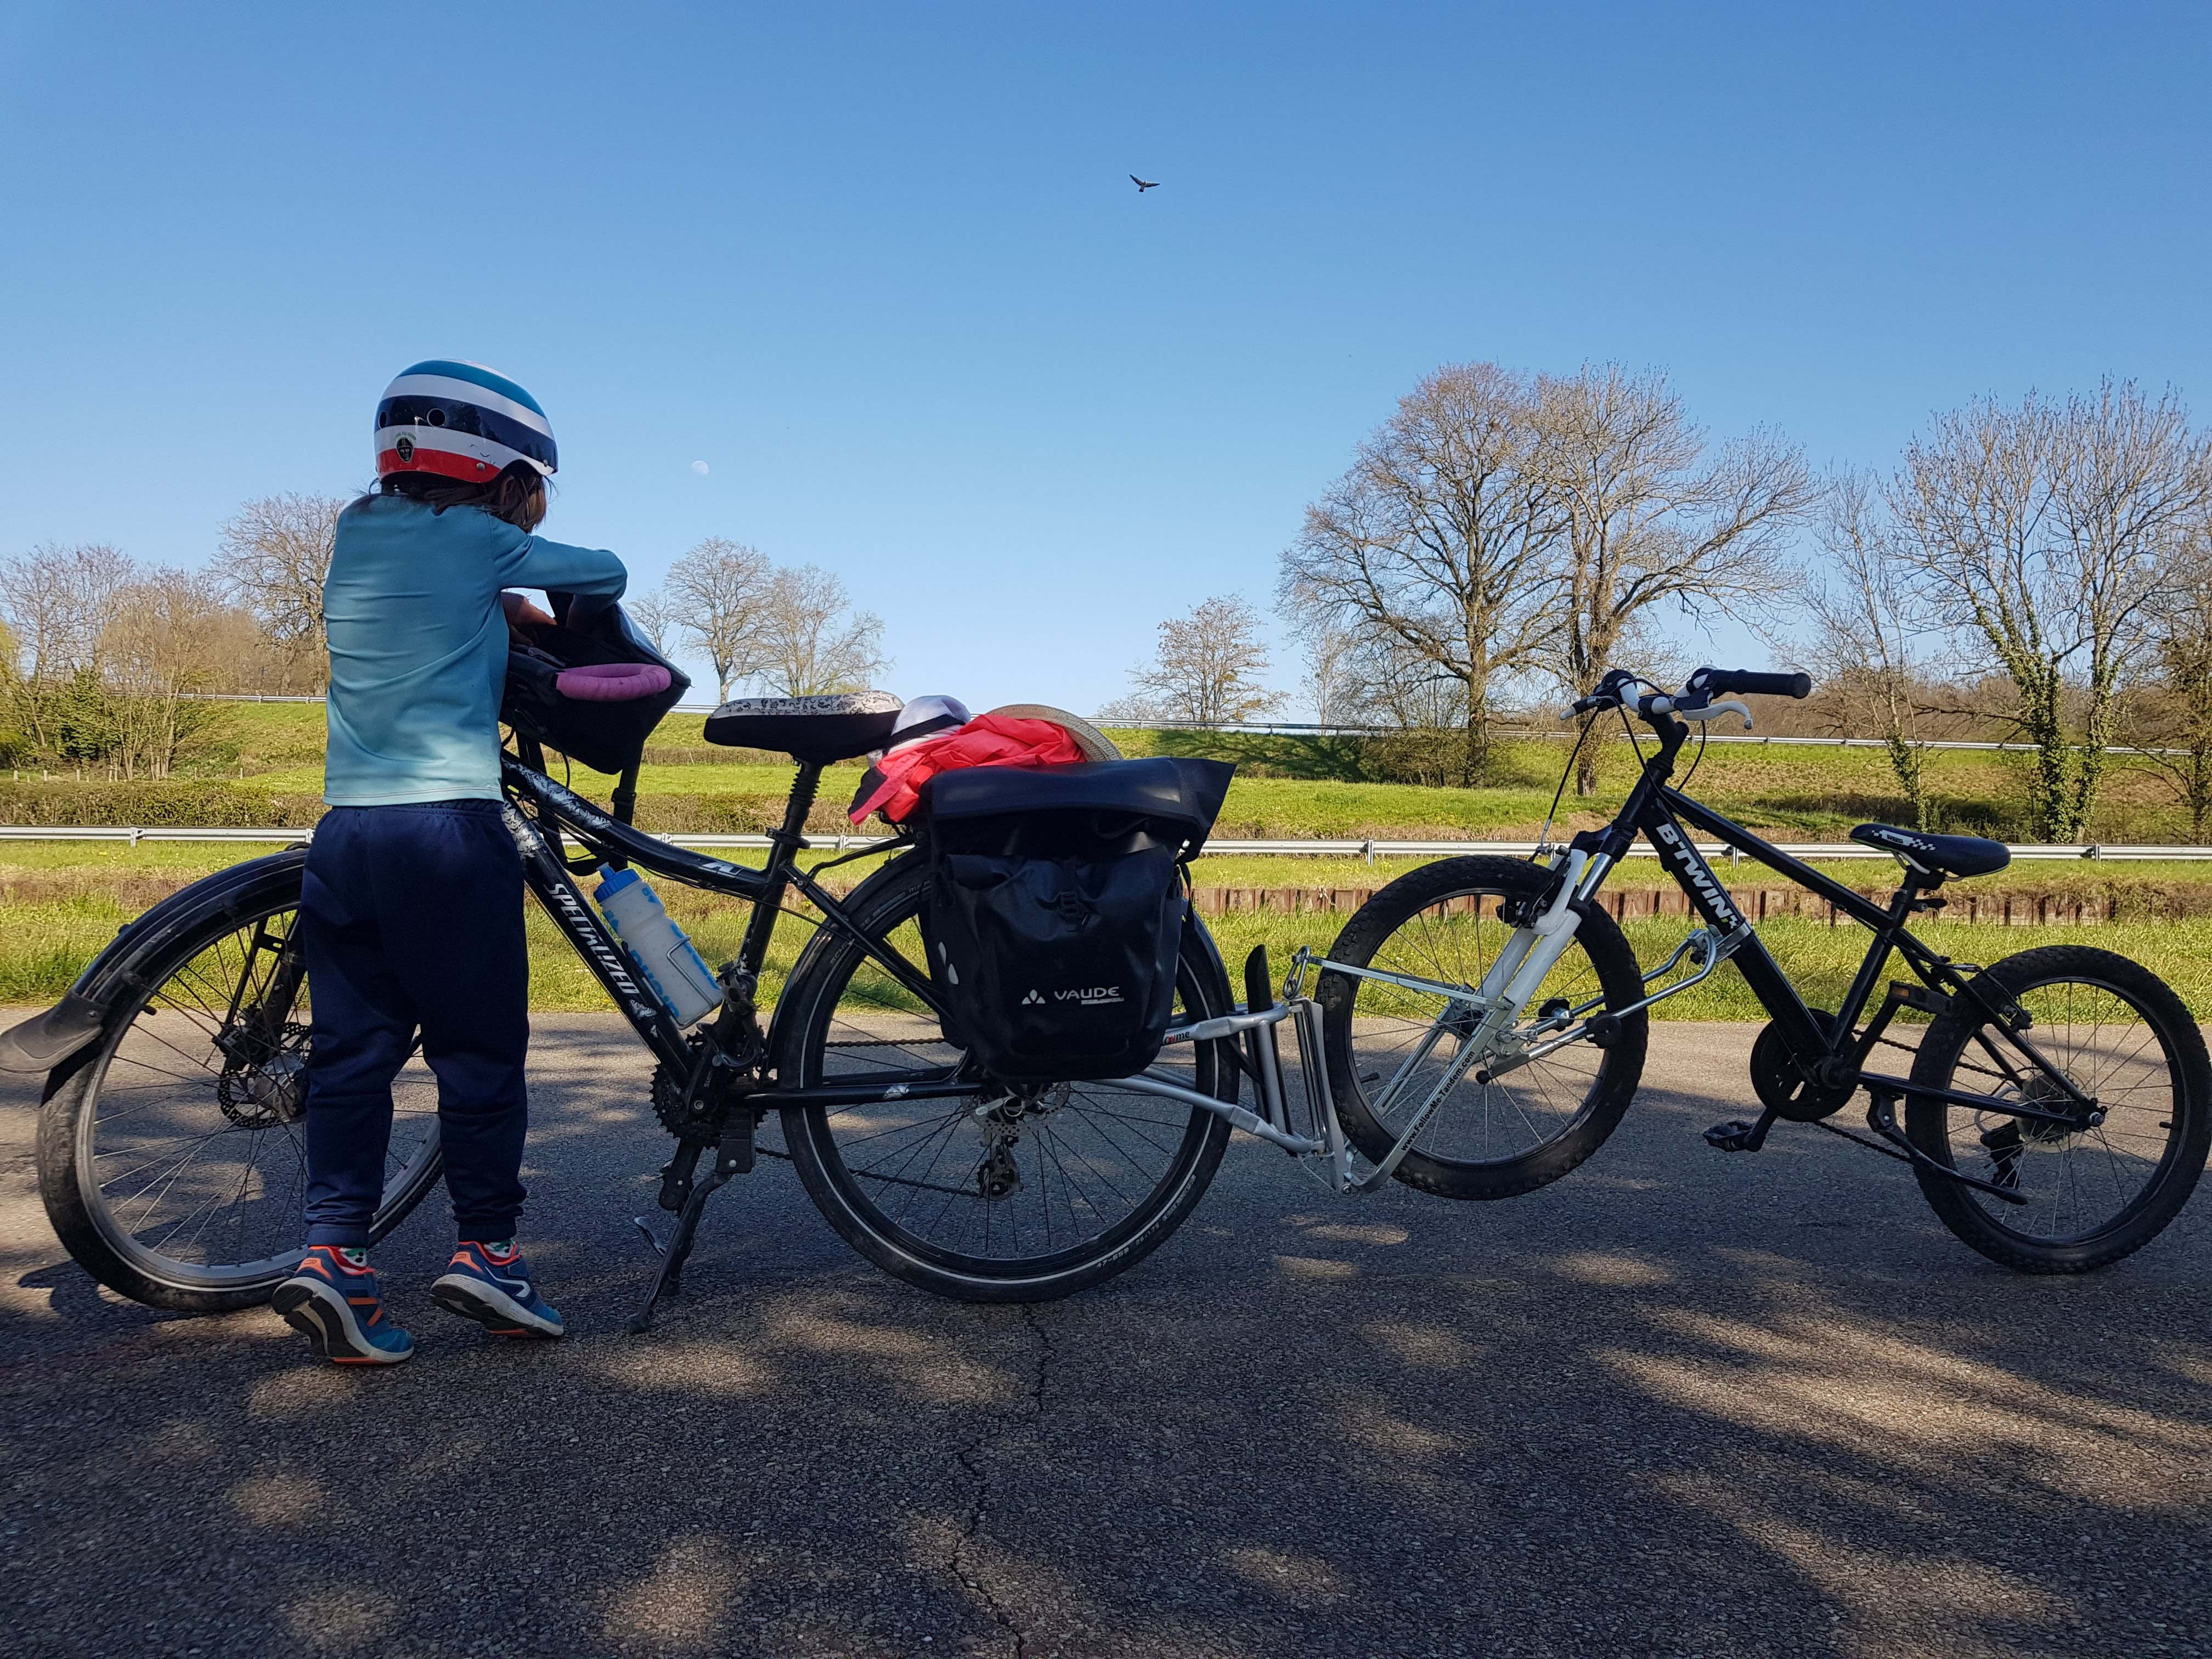 Corde de traction réglable vélo parent enfant pour des aventures